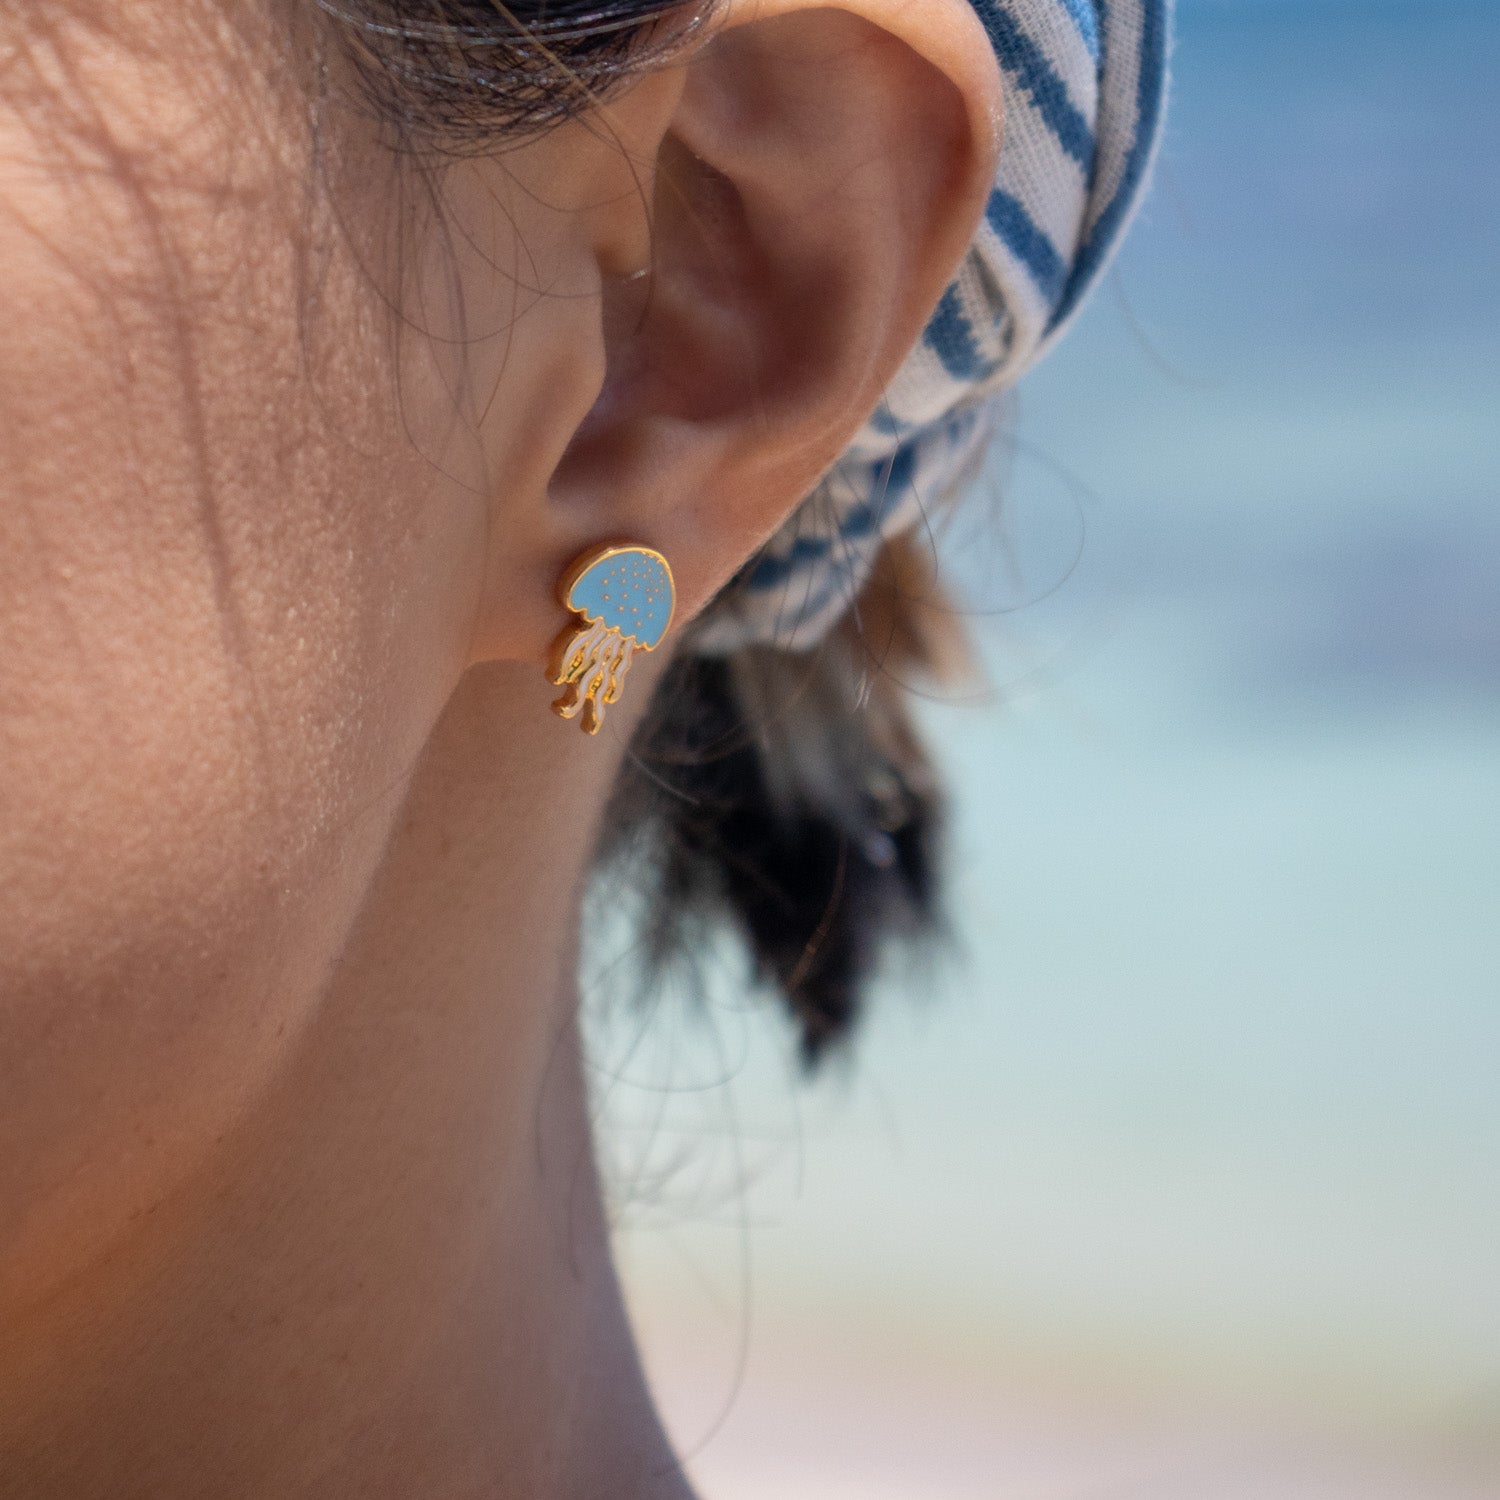 Blue Jelly Fish Enamel Earrings/ Bracelet/ Necklace